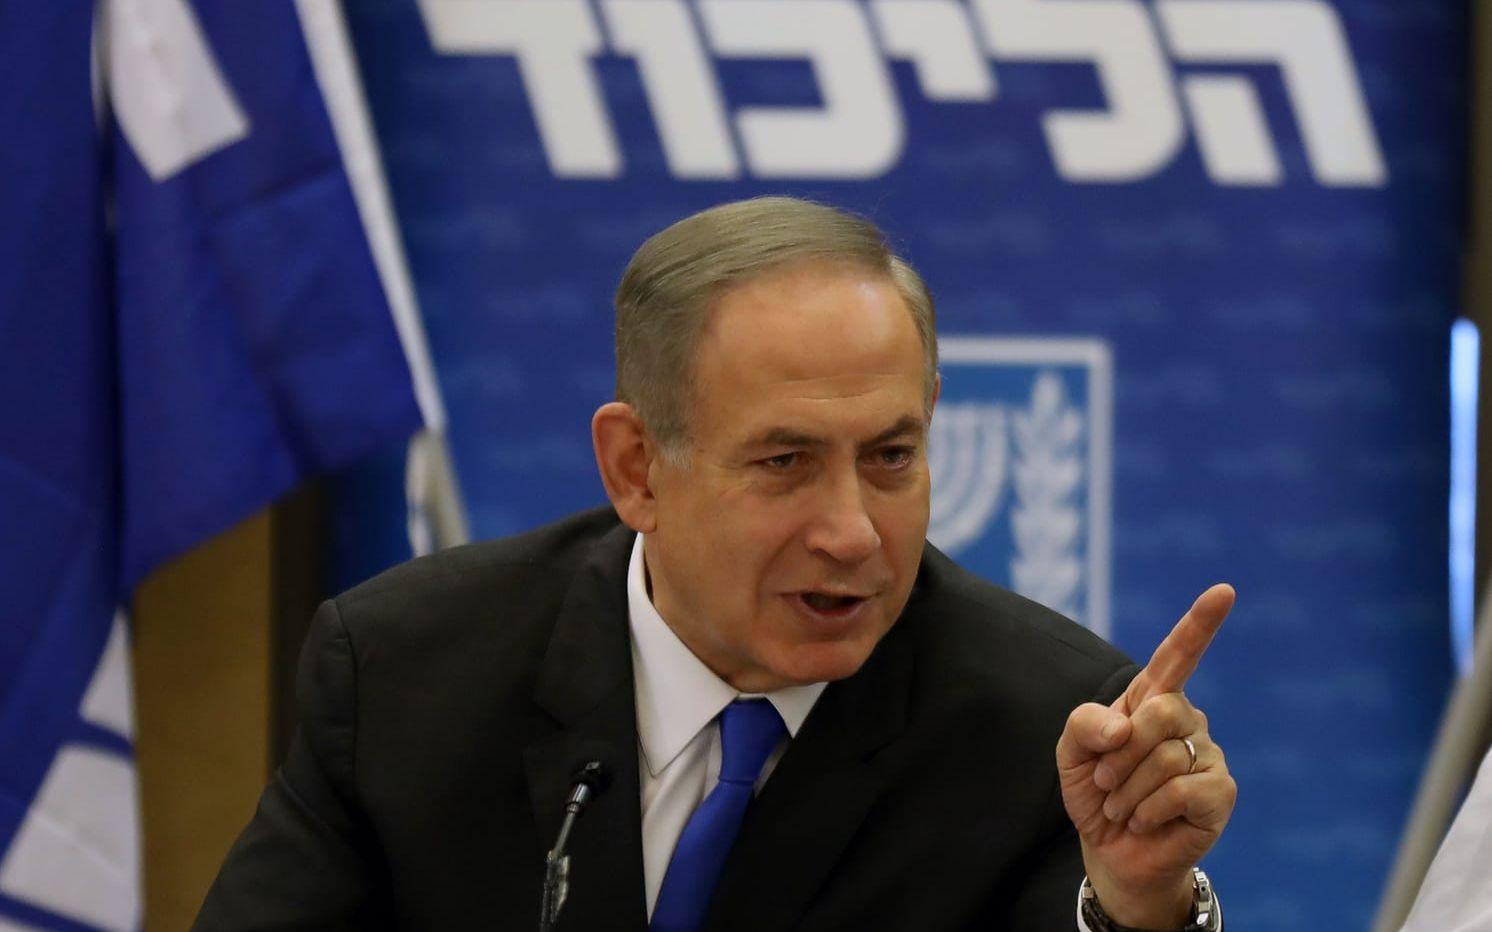 Netanyahu under ett möte i Knesset där han nekar till anklagelserna. Bild: AFP